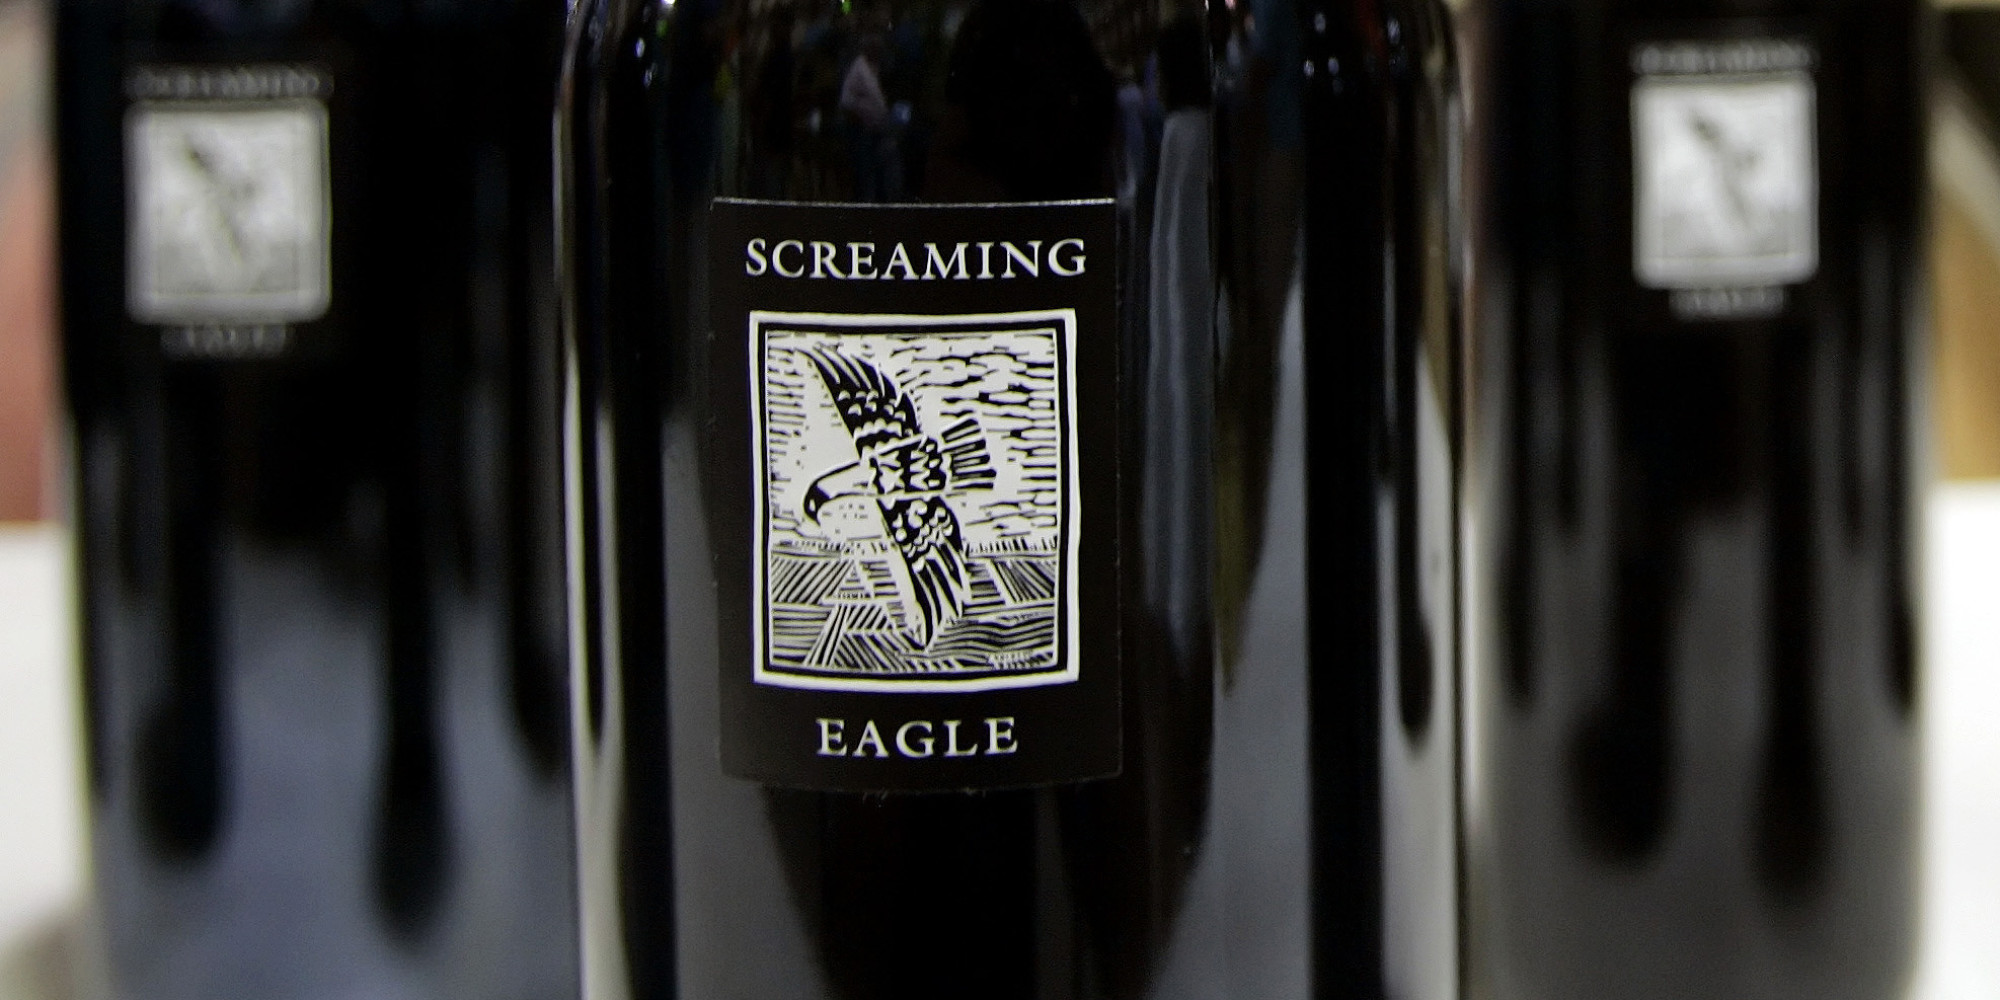 Цена самого дорогого вина. Каберне Совиньон screaming Eagle 1992. Каберне Совиньон screaming Eagle. Screaming Eagle вино 1992. Screaming Eagle Cabernet Sauvignon 1992.